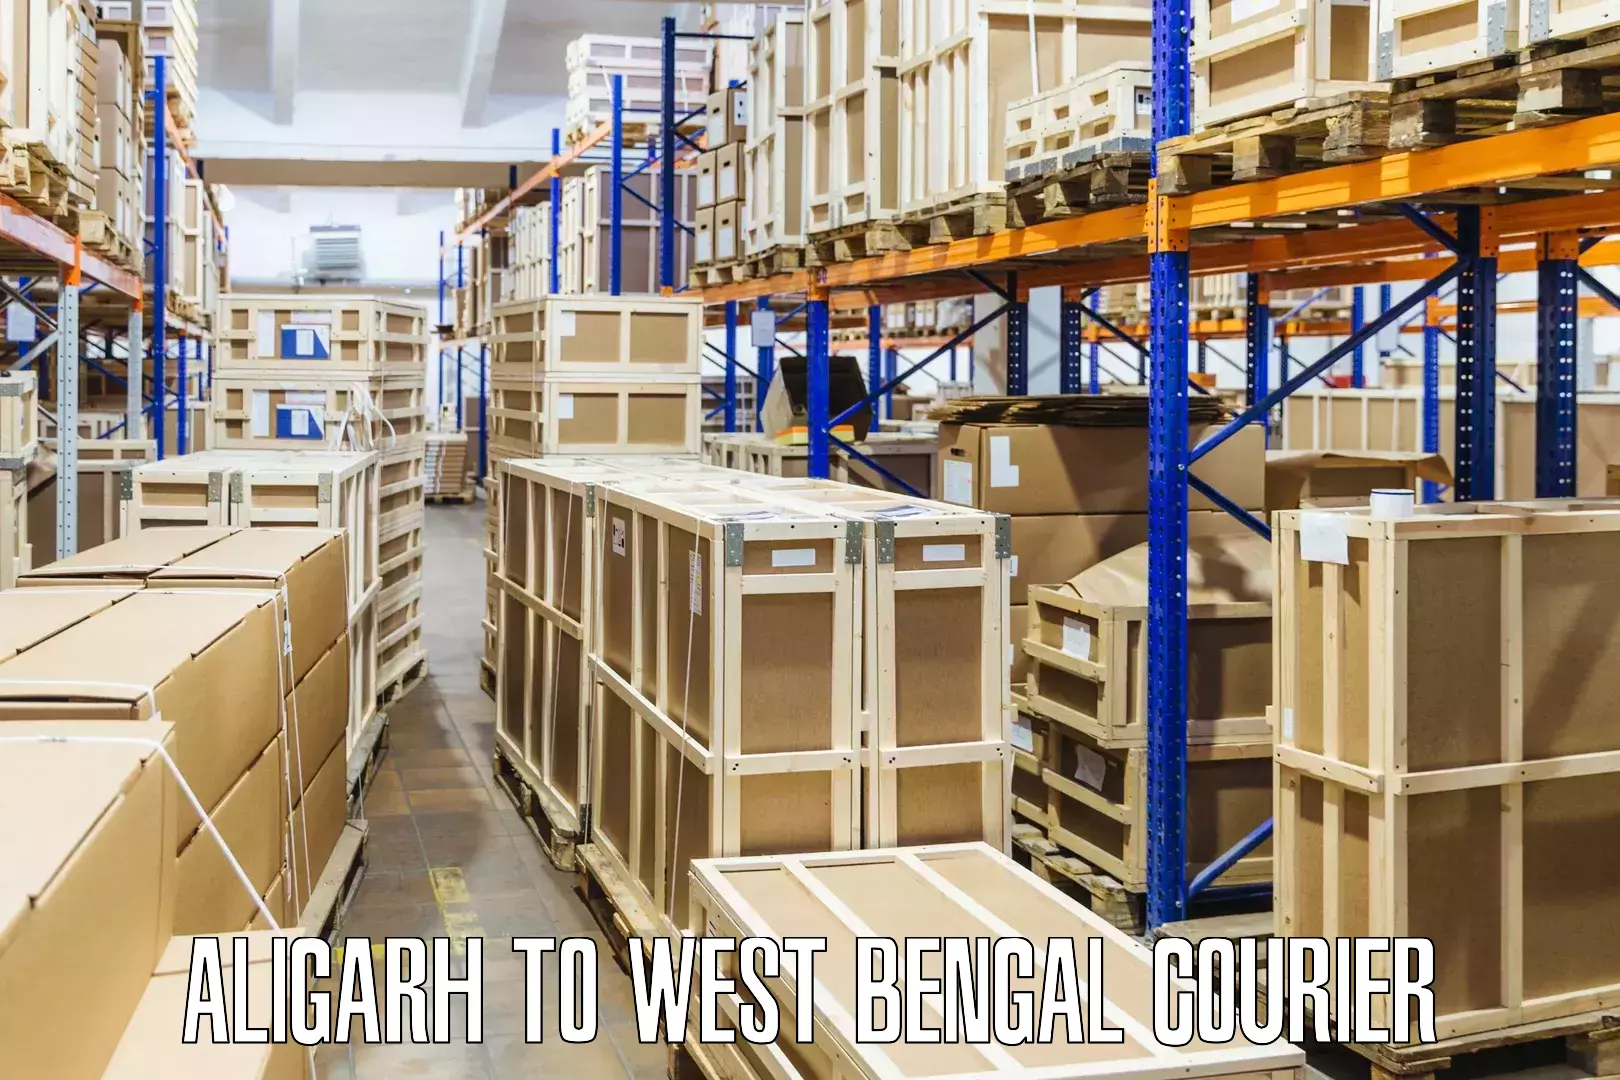 Digital courier platforms Aligarh to Panihati